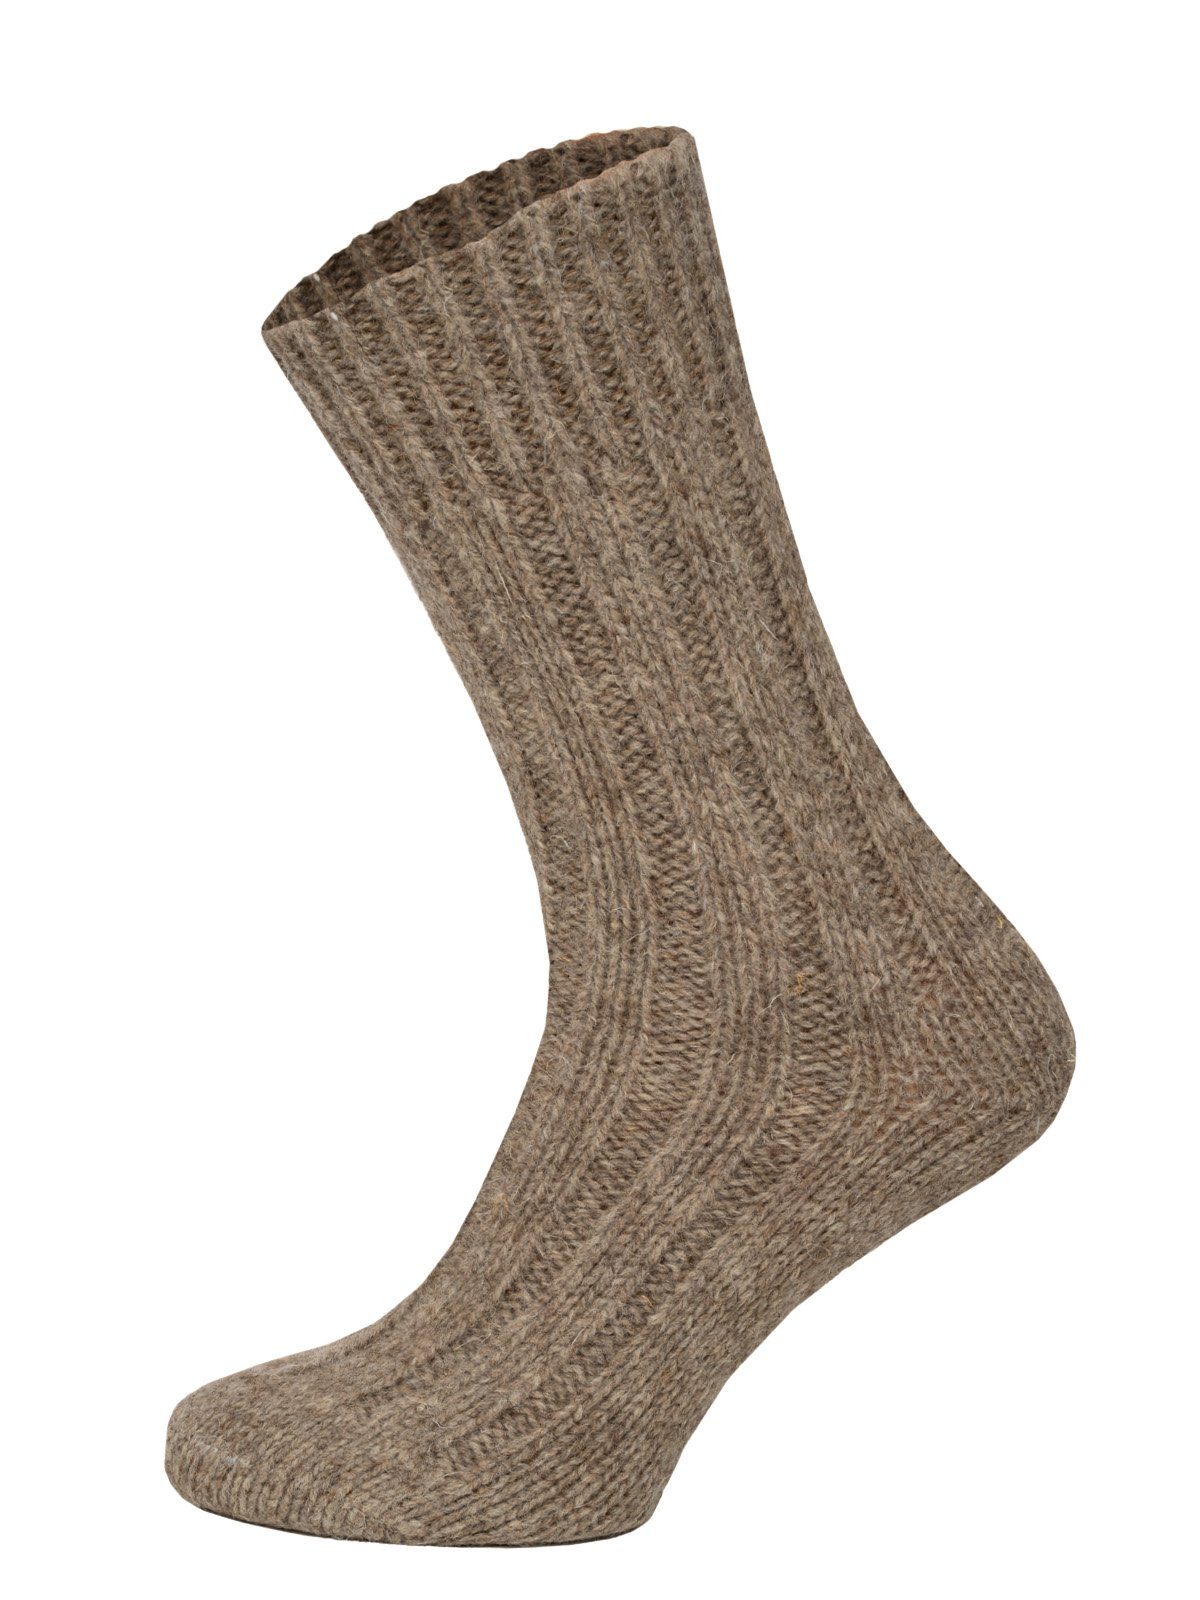 Taupe Wollsocken 2er Dicke mit Wolle und Pack Wollanteil aus 100% 100% Wollsocken HomeOfSocks warme Socken (Schurwolle)